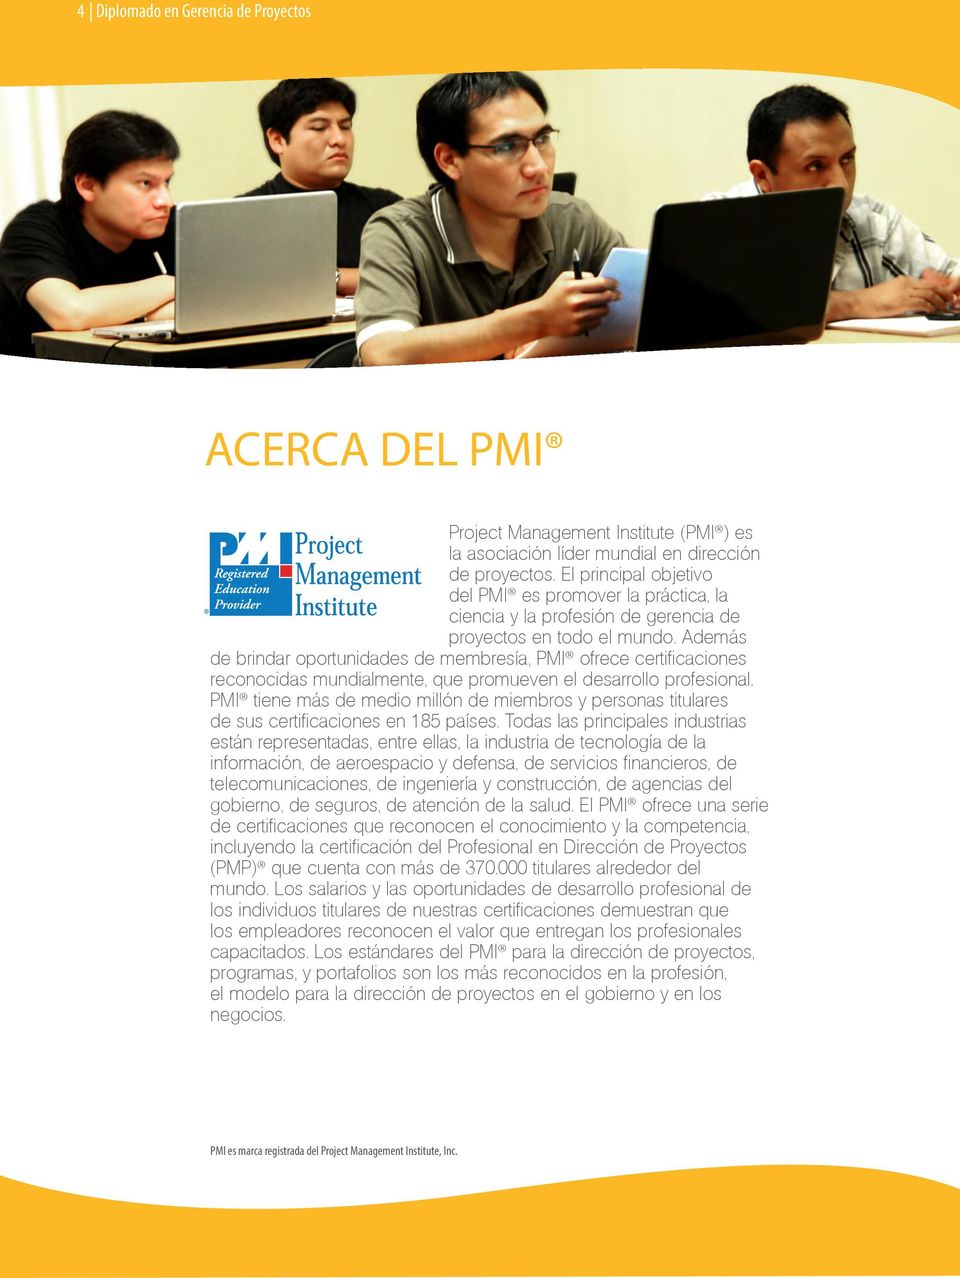 Además de brindar oportunidades de membresía, PMI ofrece certificaciones reconocidas mundialmente, que promueven el desarrollo profesional.